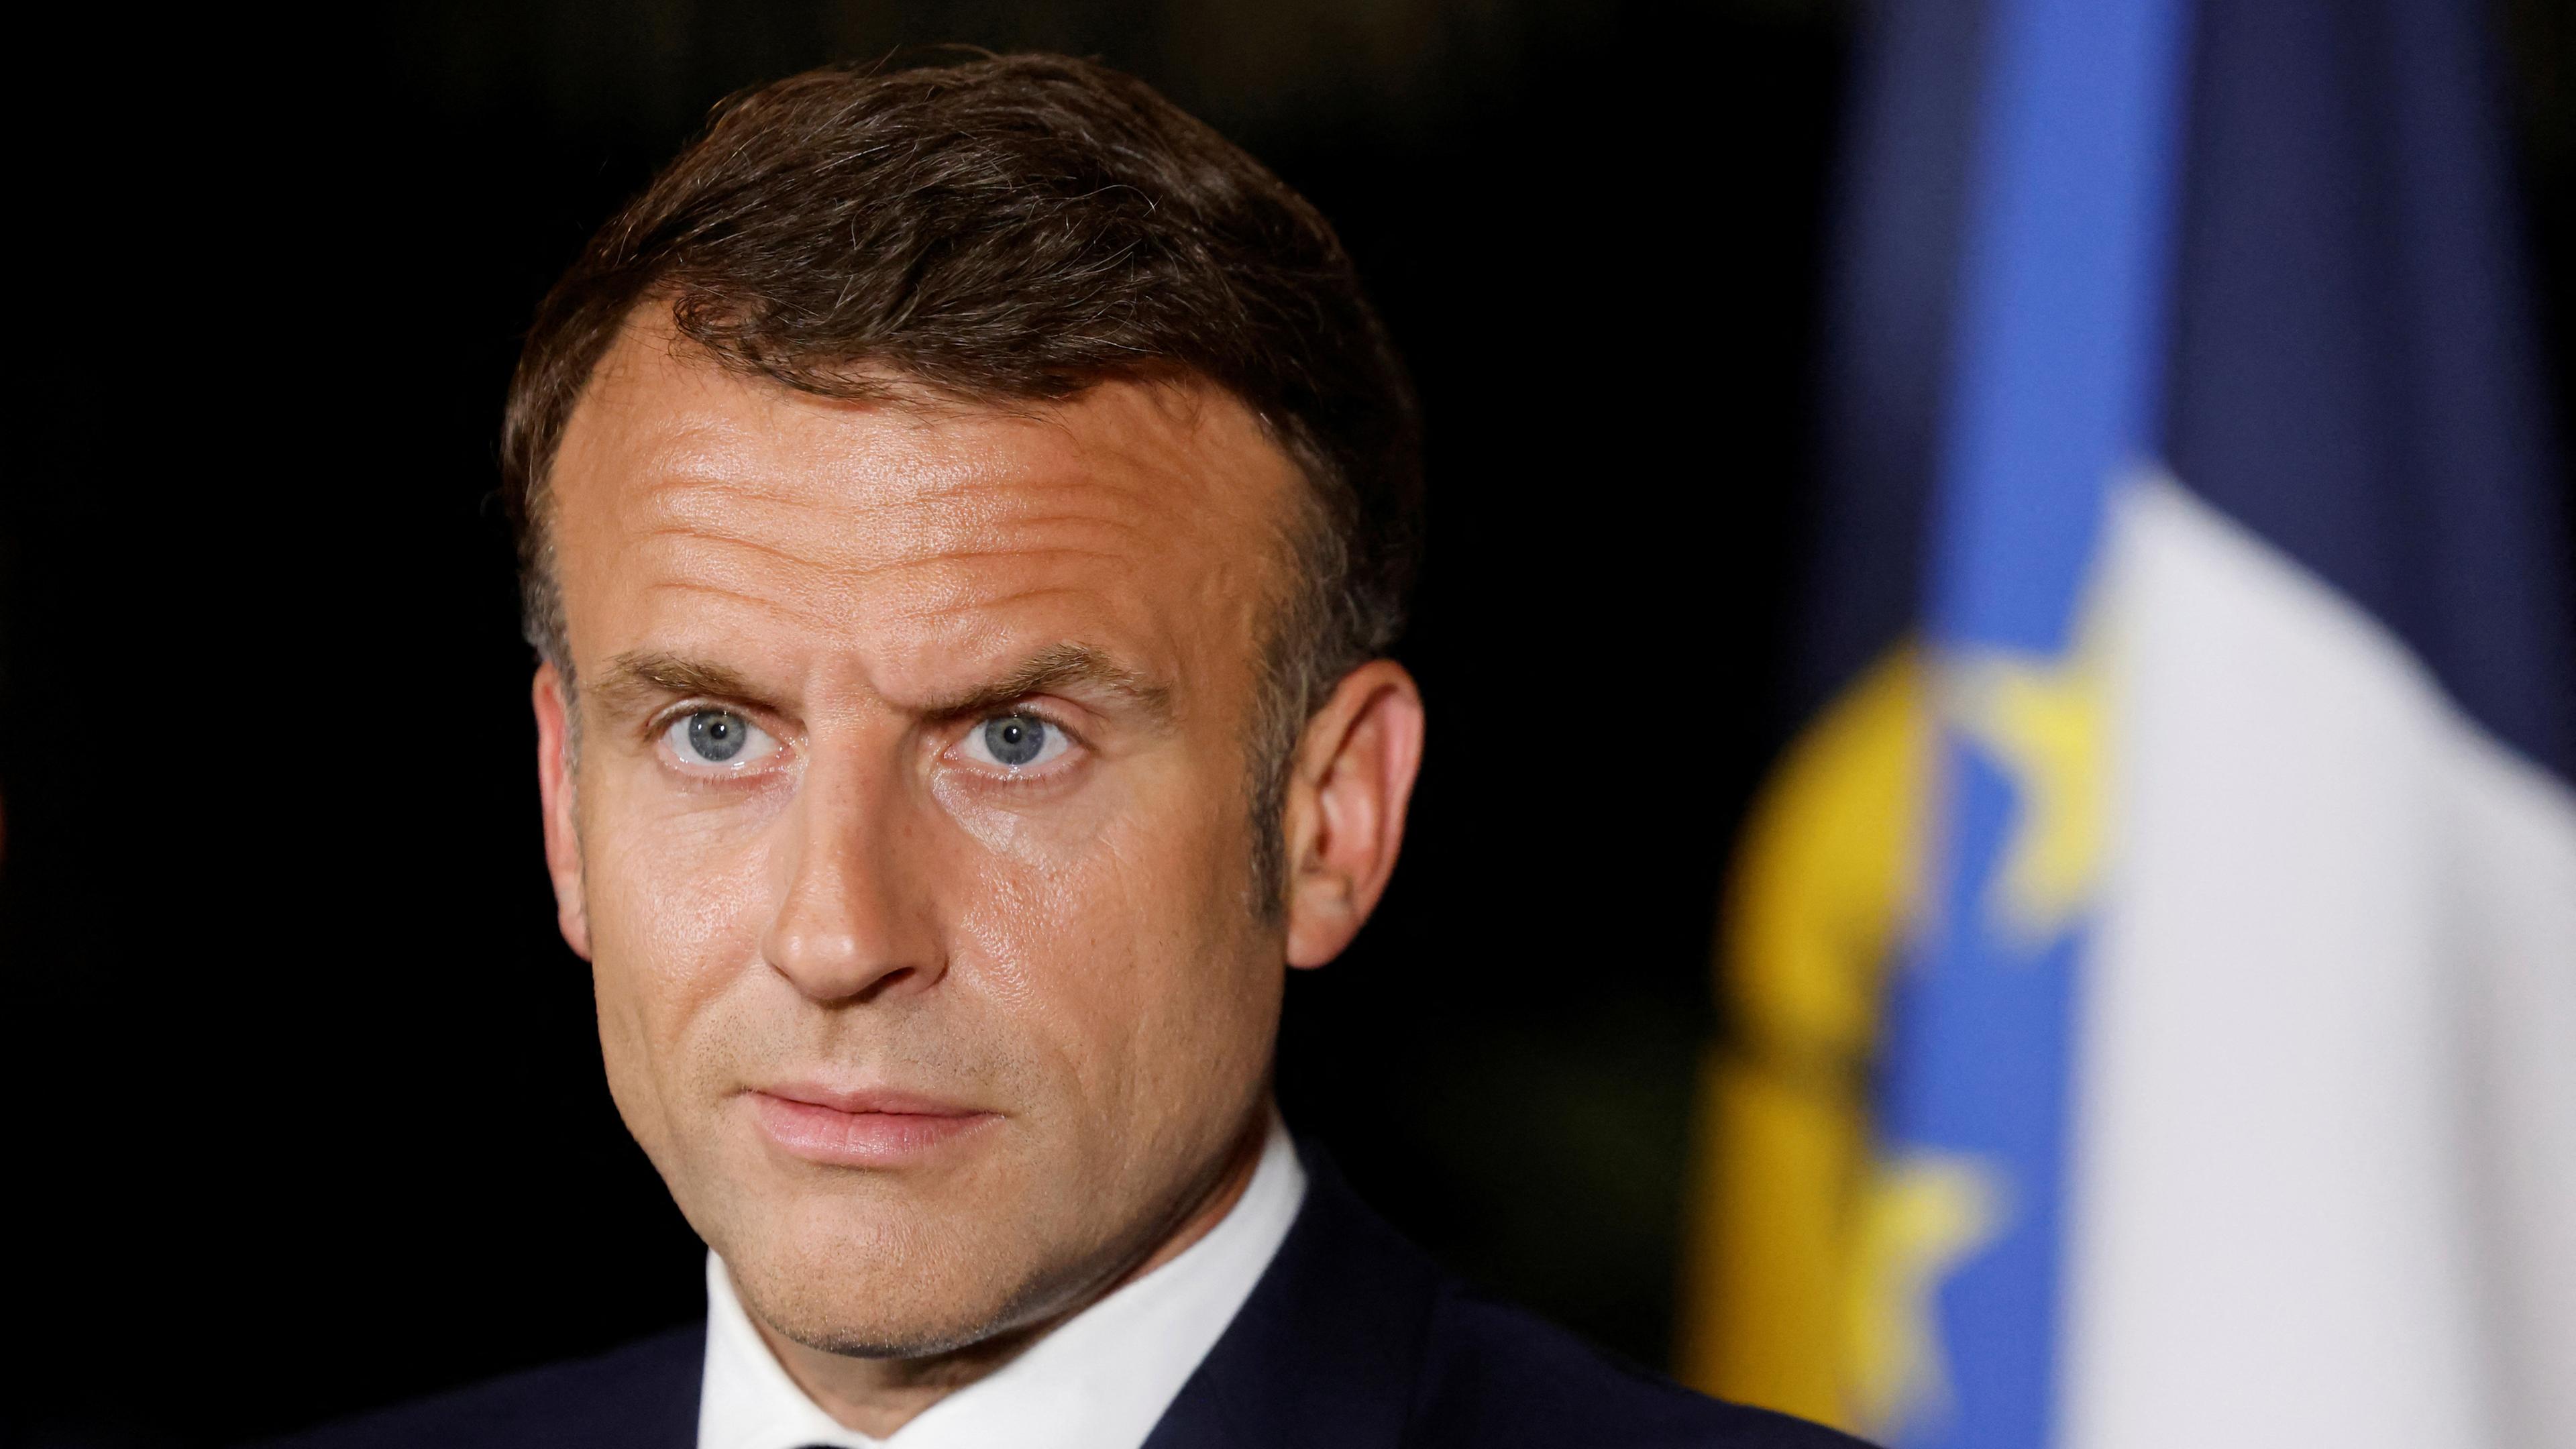 Der französische Präsident Macron steht vor einem schwarzen Hintergrund und schaut mit ernster Miene in die Ferne.